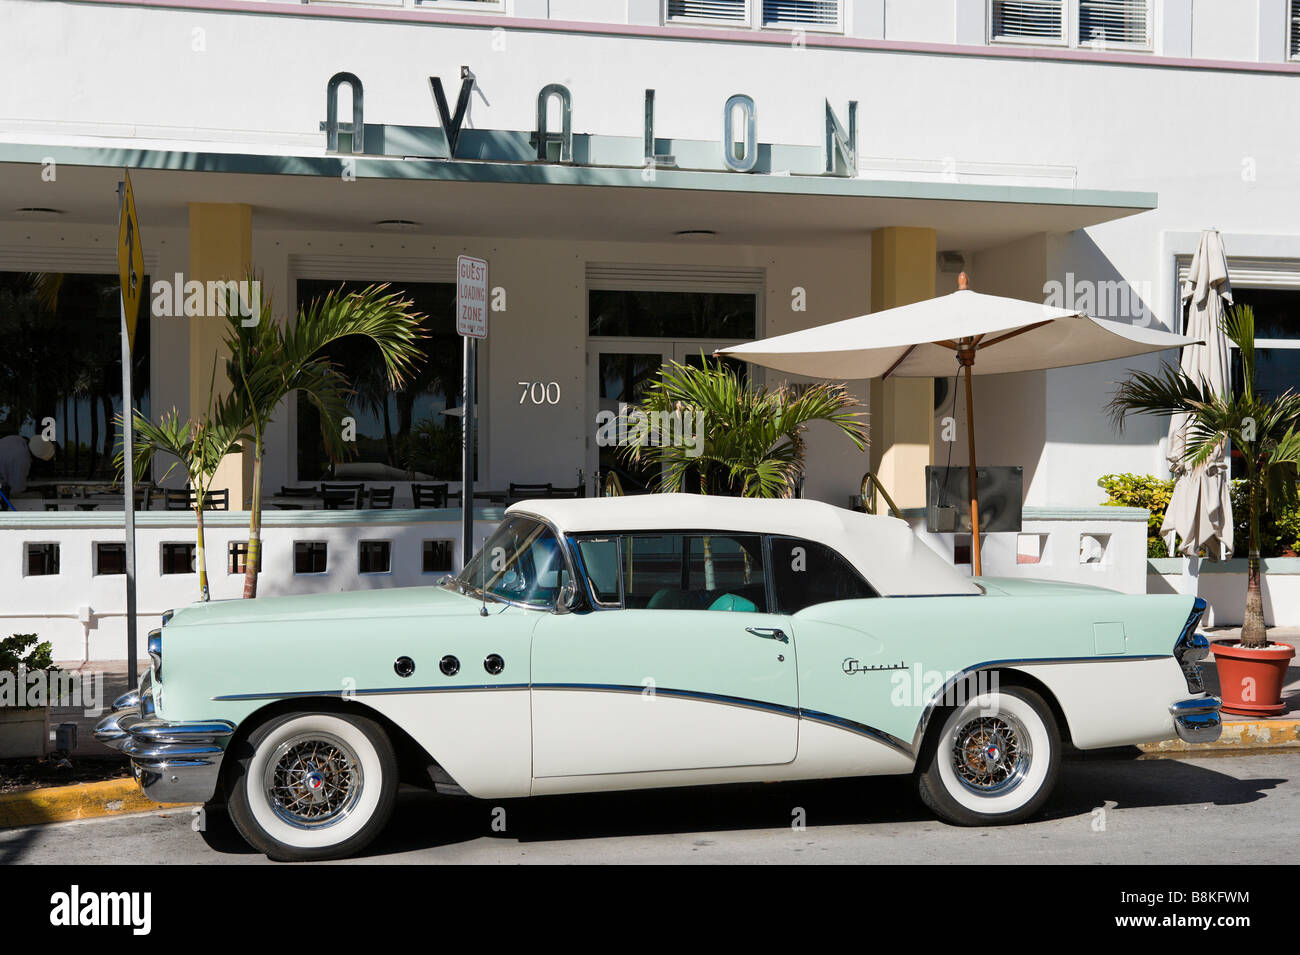 1950 Austin a en face de l'art déco de l'hôtel Avalon sur Ocean Drive, à South Beach, Miami Beach, Floride Banque D'Images